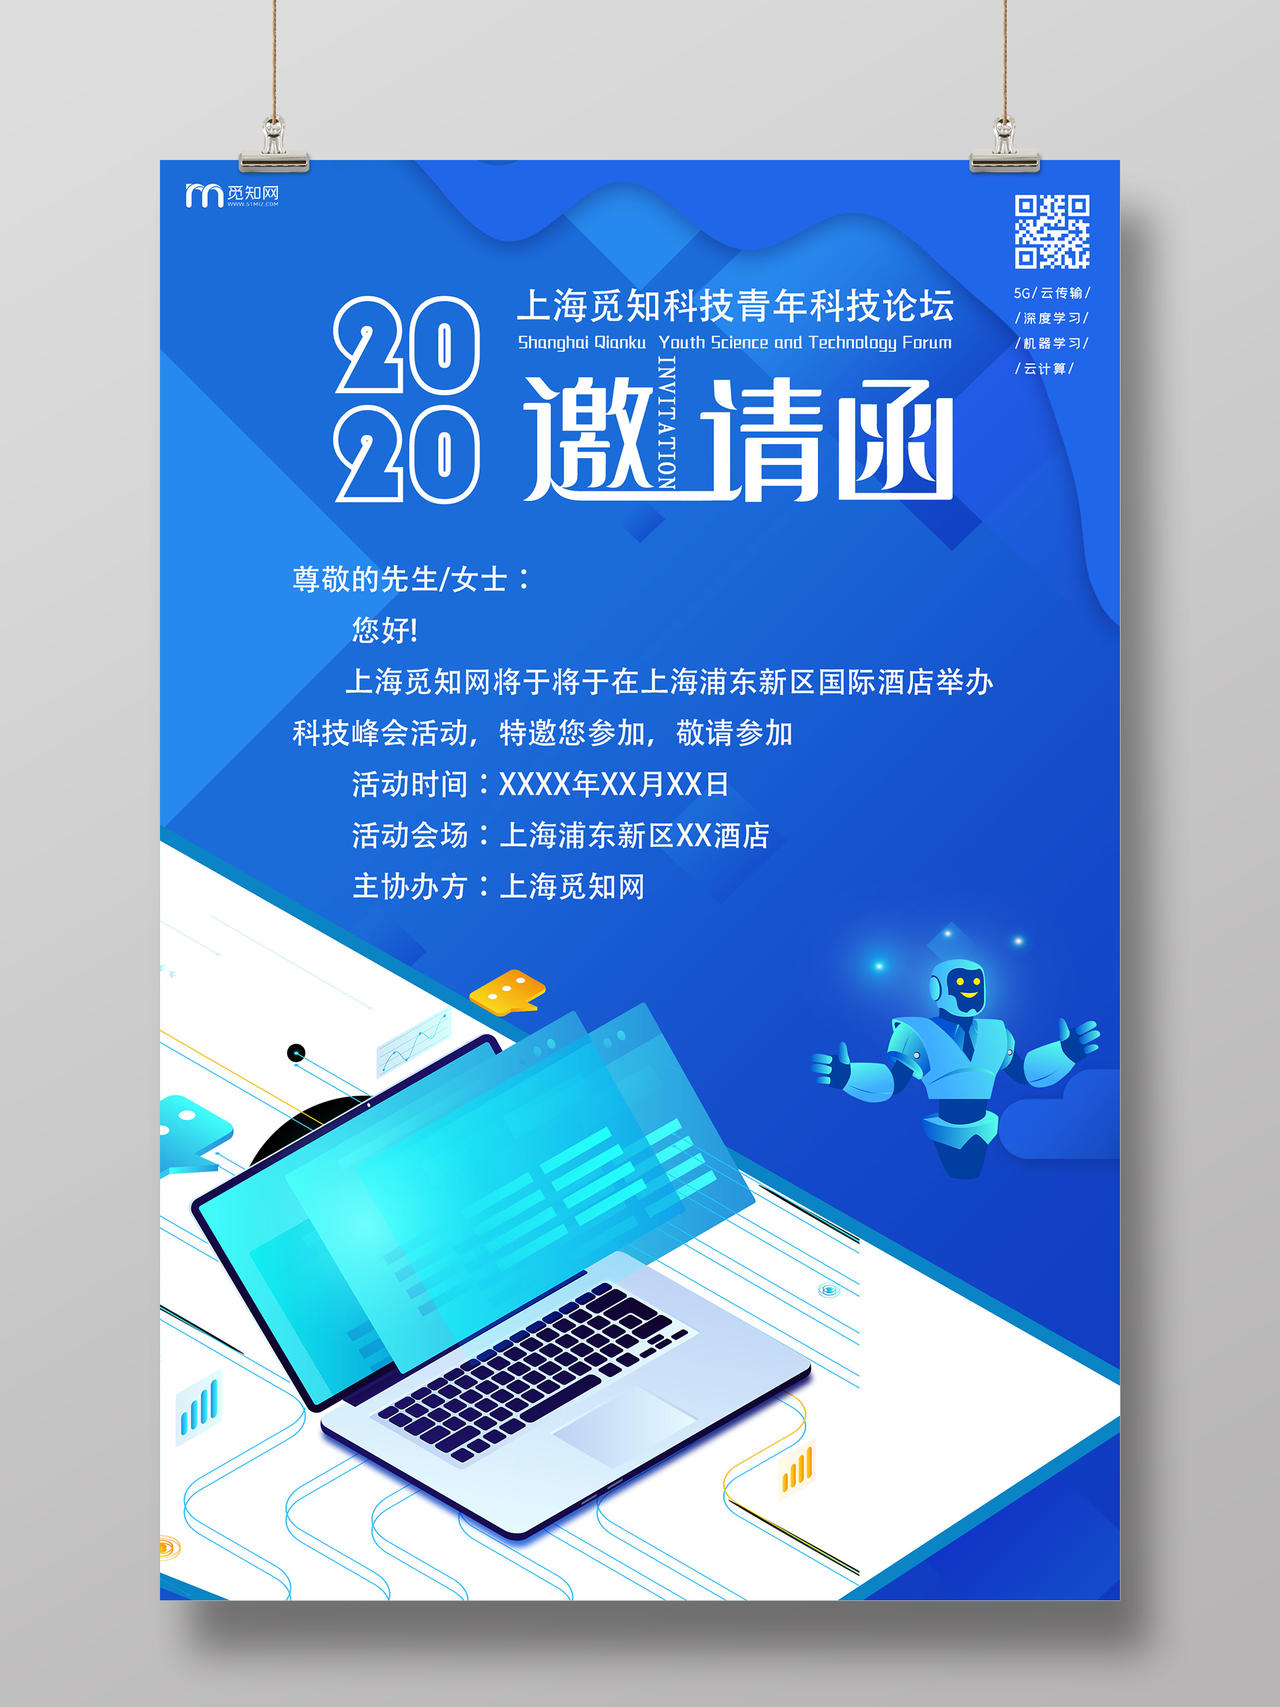 蓝色插画2020科技峰会活动邀请函海报商务邀请函